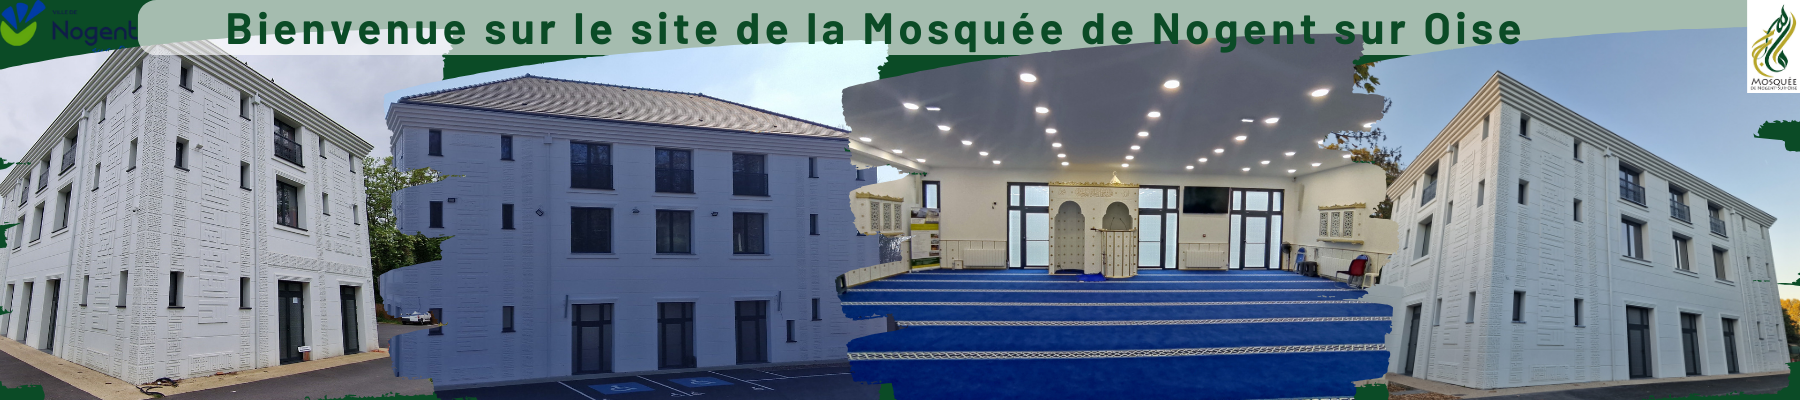 Mosquée de Nogent sur Oise